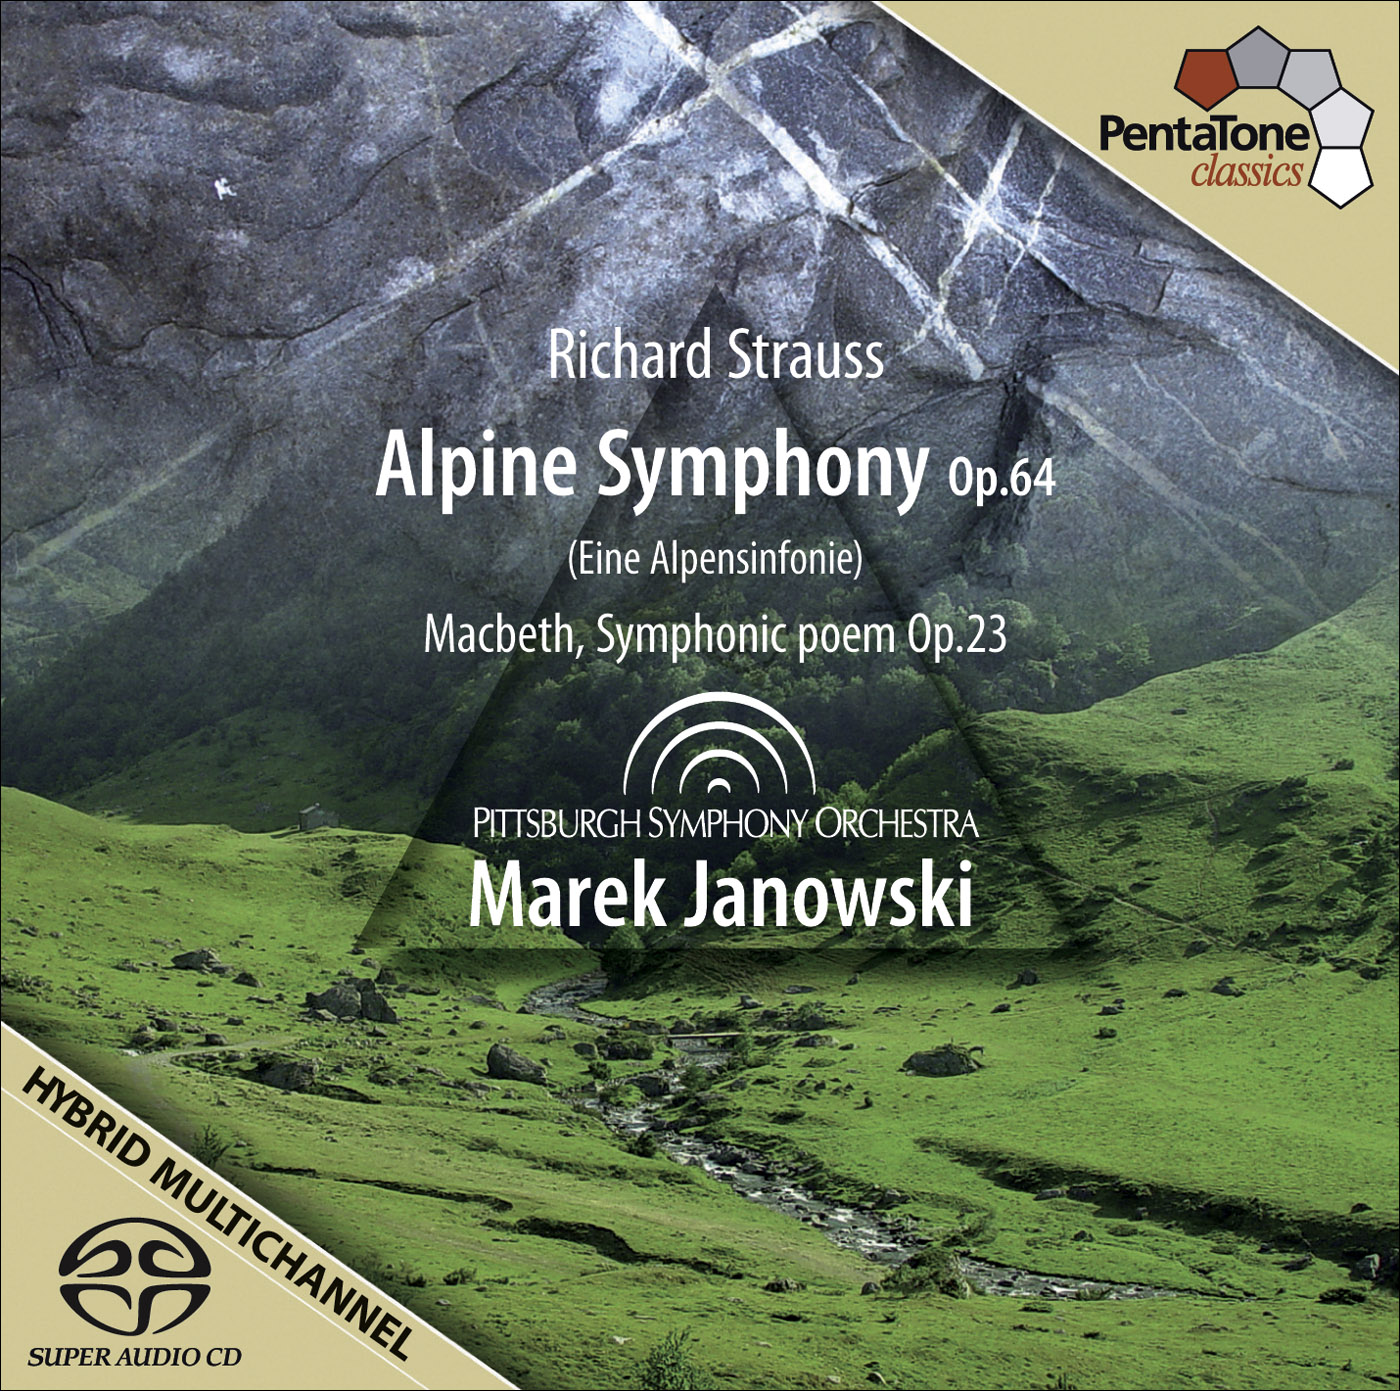 Marek Janowski - Richard Strauss: Alpine Symphony & Macbeth, Symphonic poem (2009) [FLAC 24bit/96kHz]